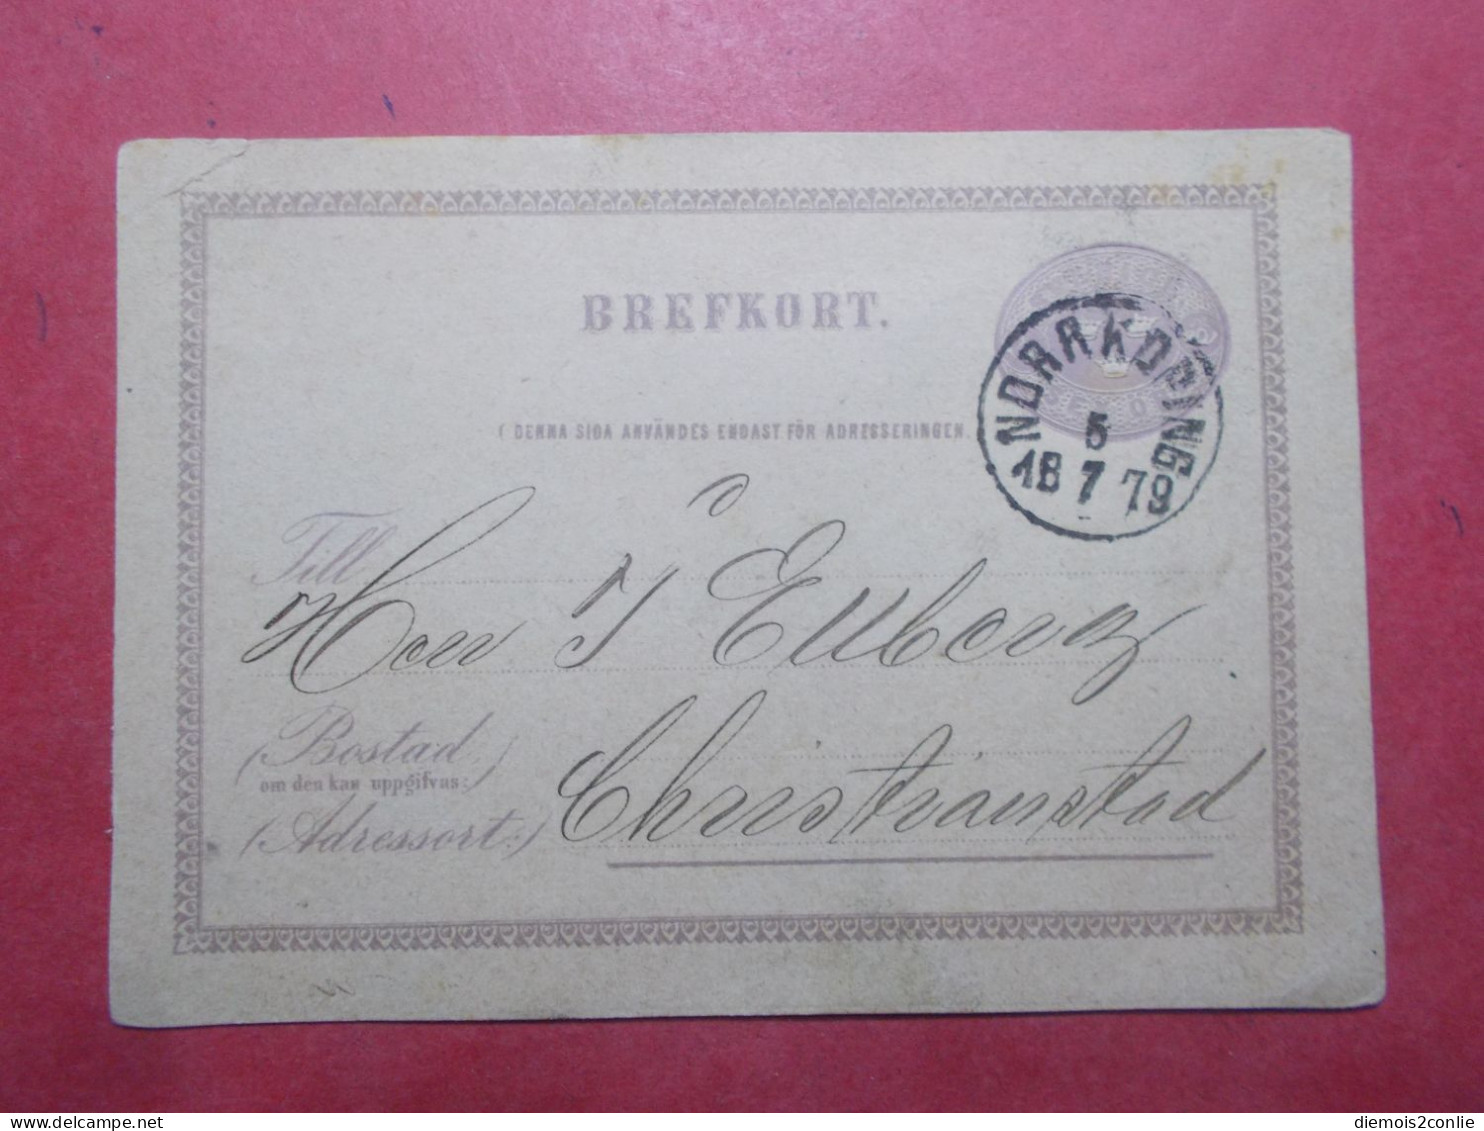 Marcophilie SUEDE Entier Postal 04/07/1879 (B310) - Ganzsachen